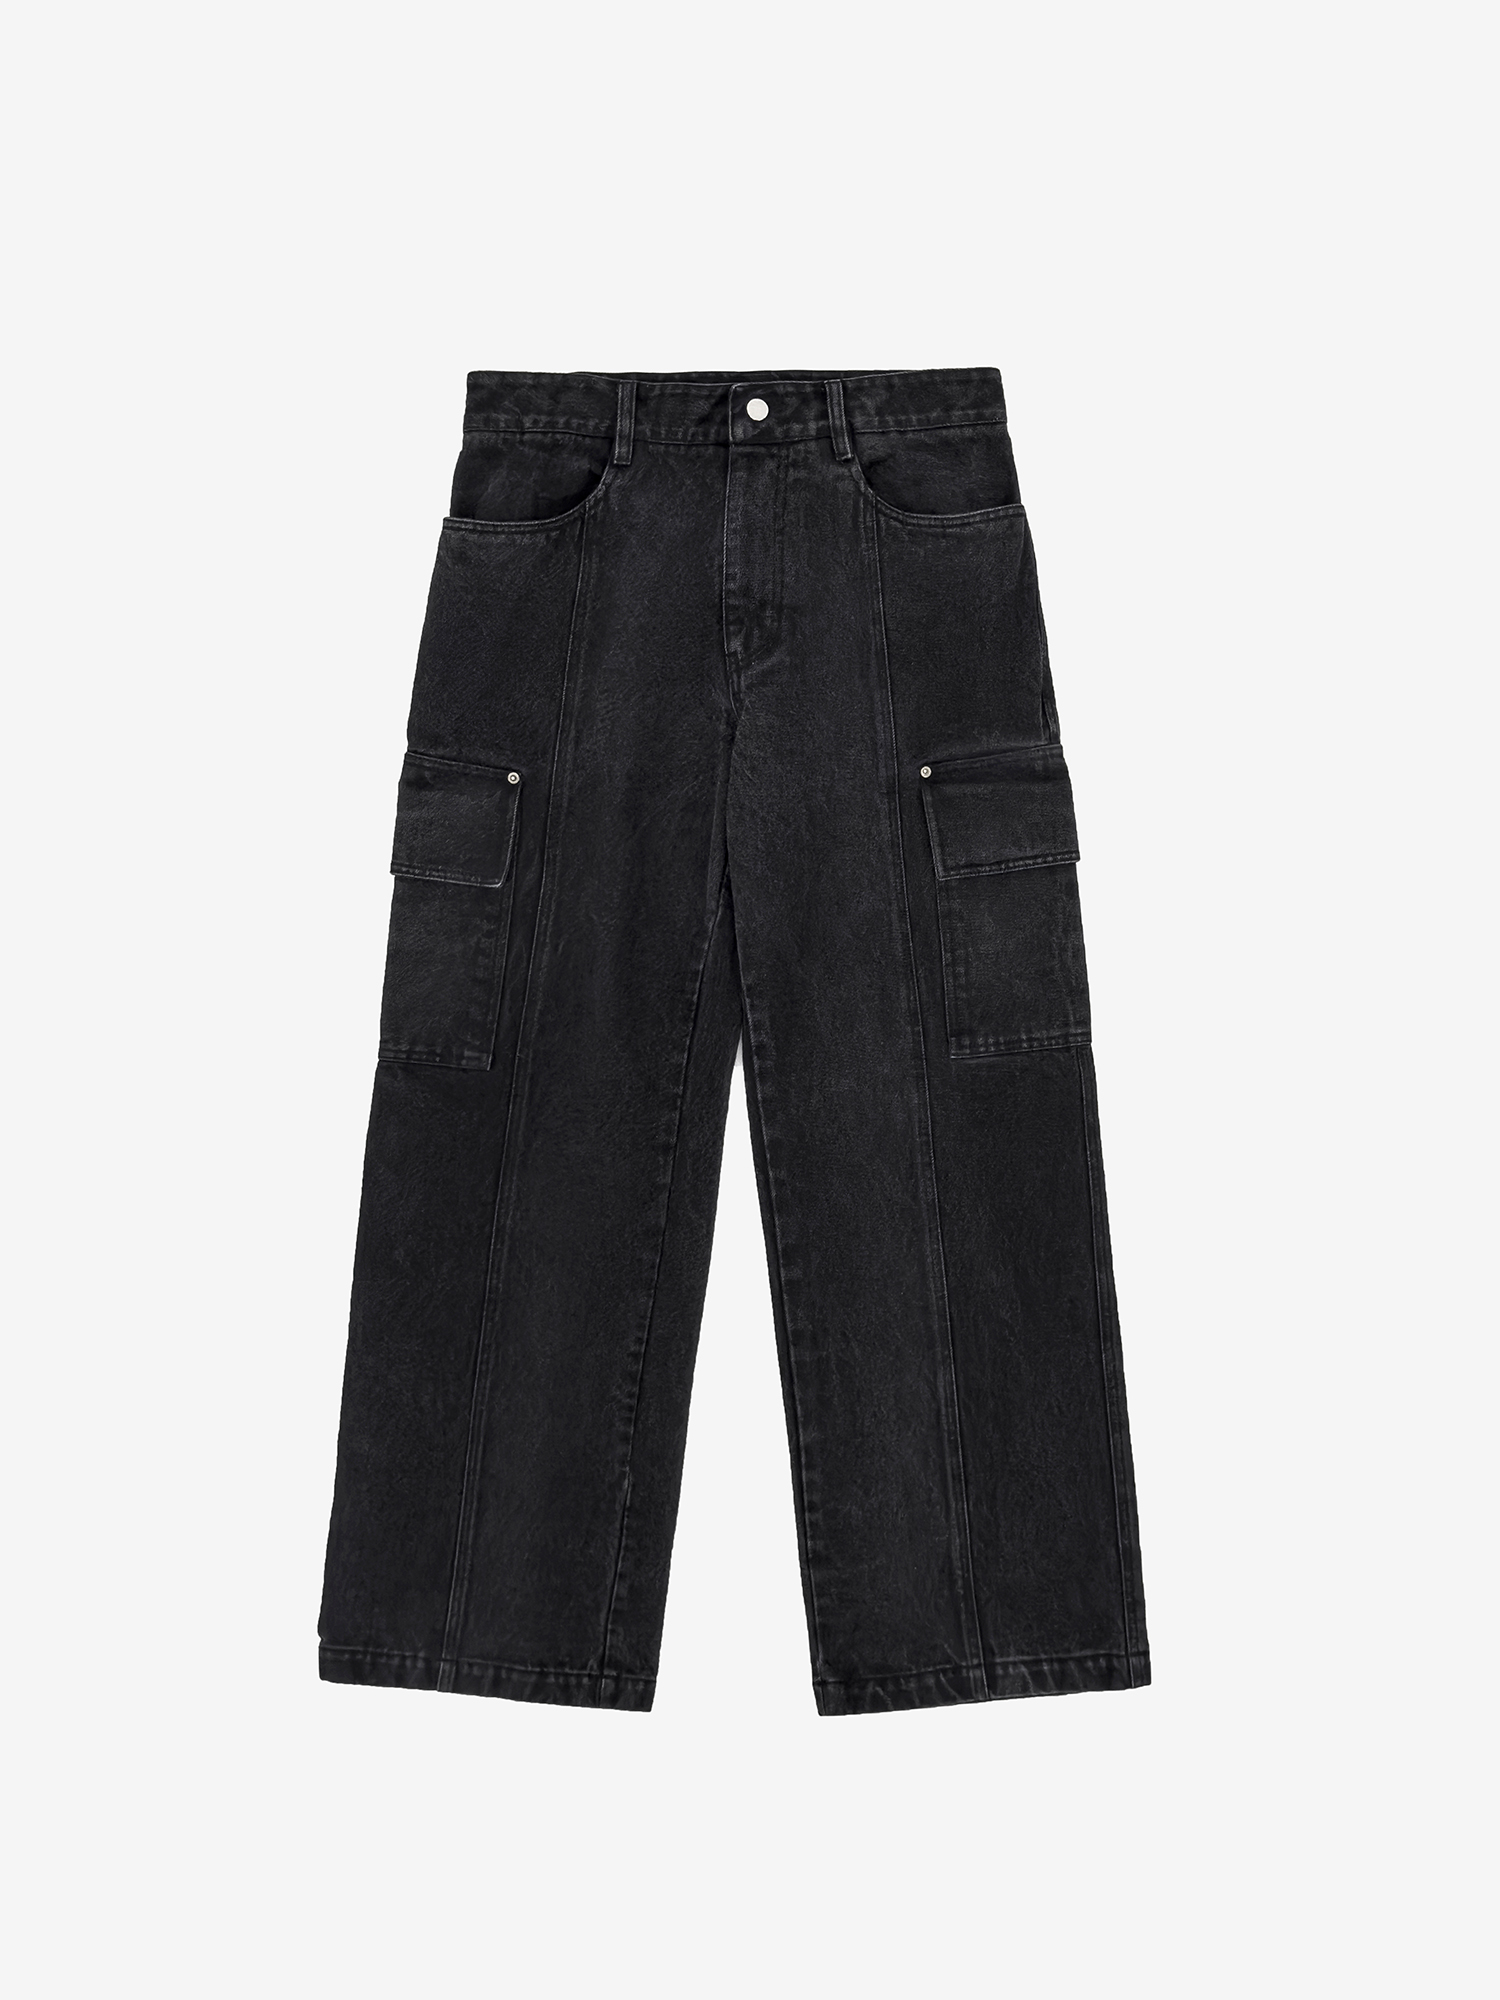 Wide Denim Cargo Pants - Washed Black